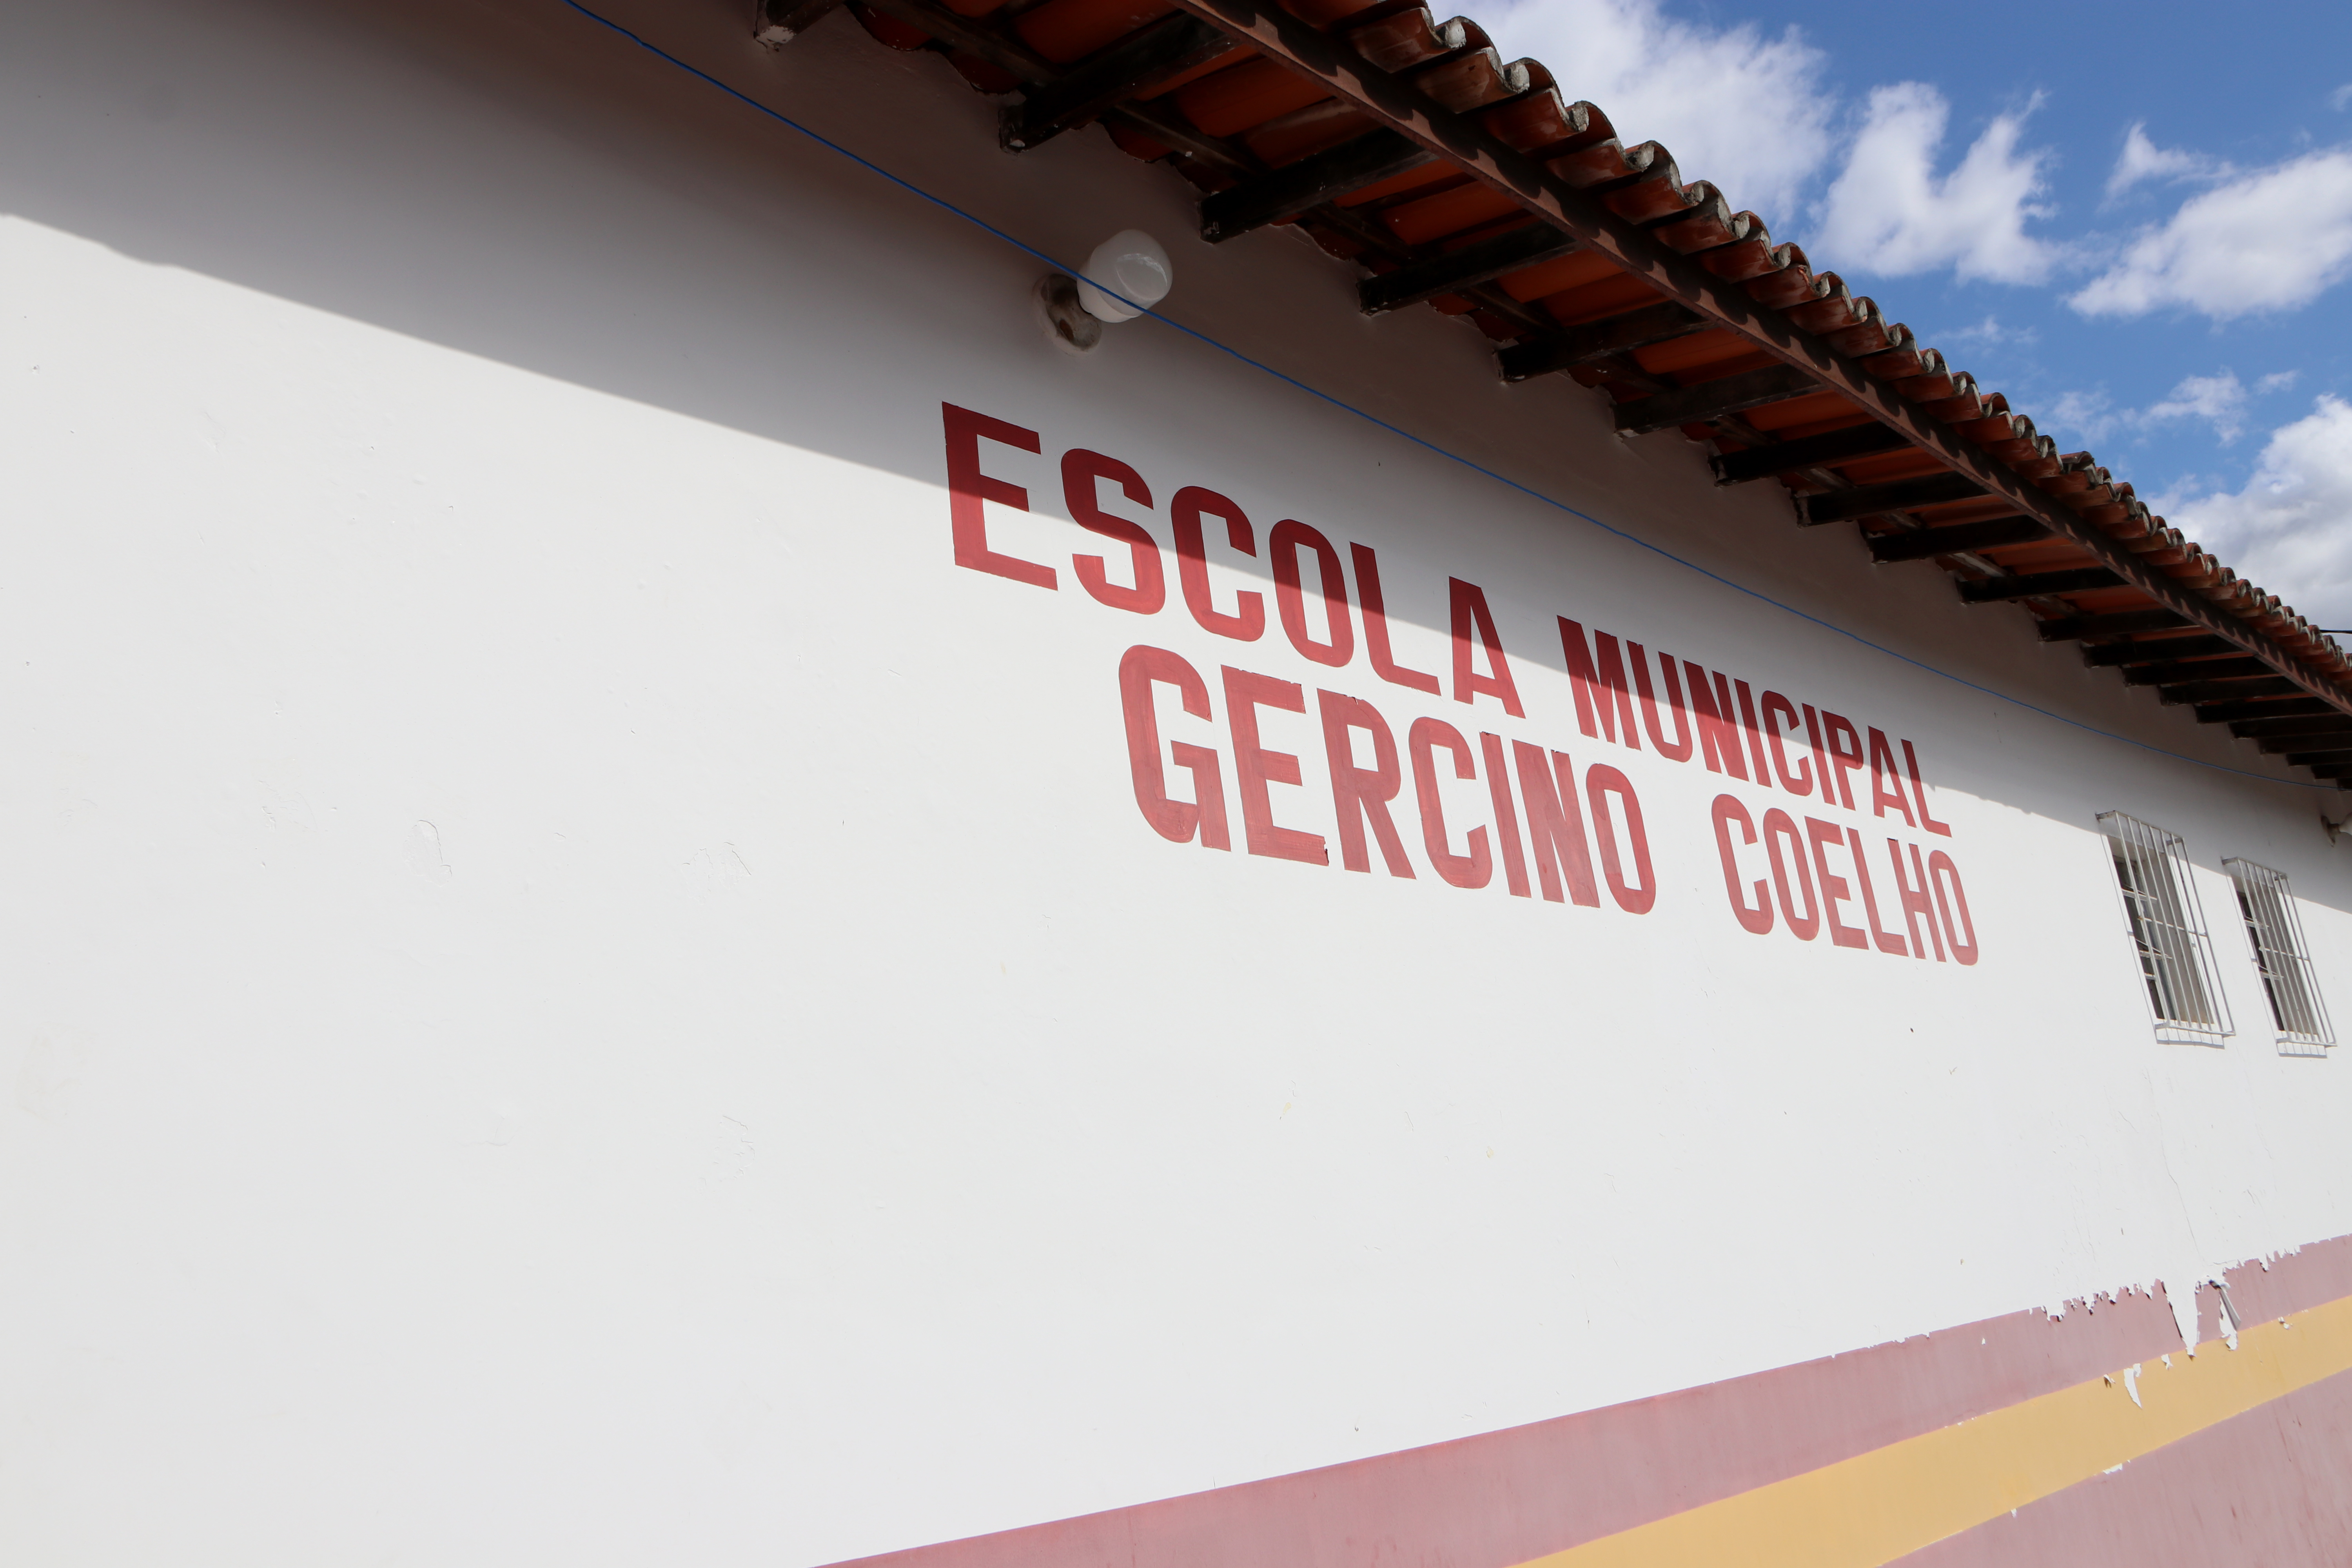 ESCOLA - Reforma da Escola Municipal Gercino Coelho